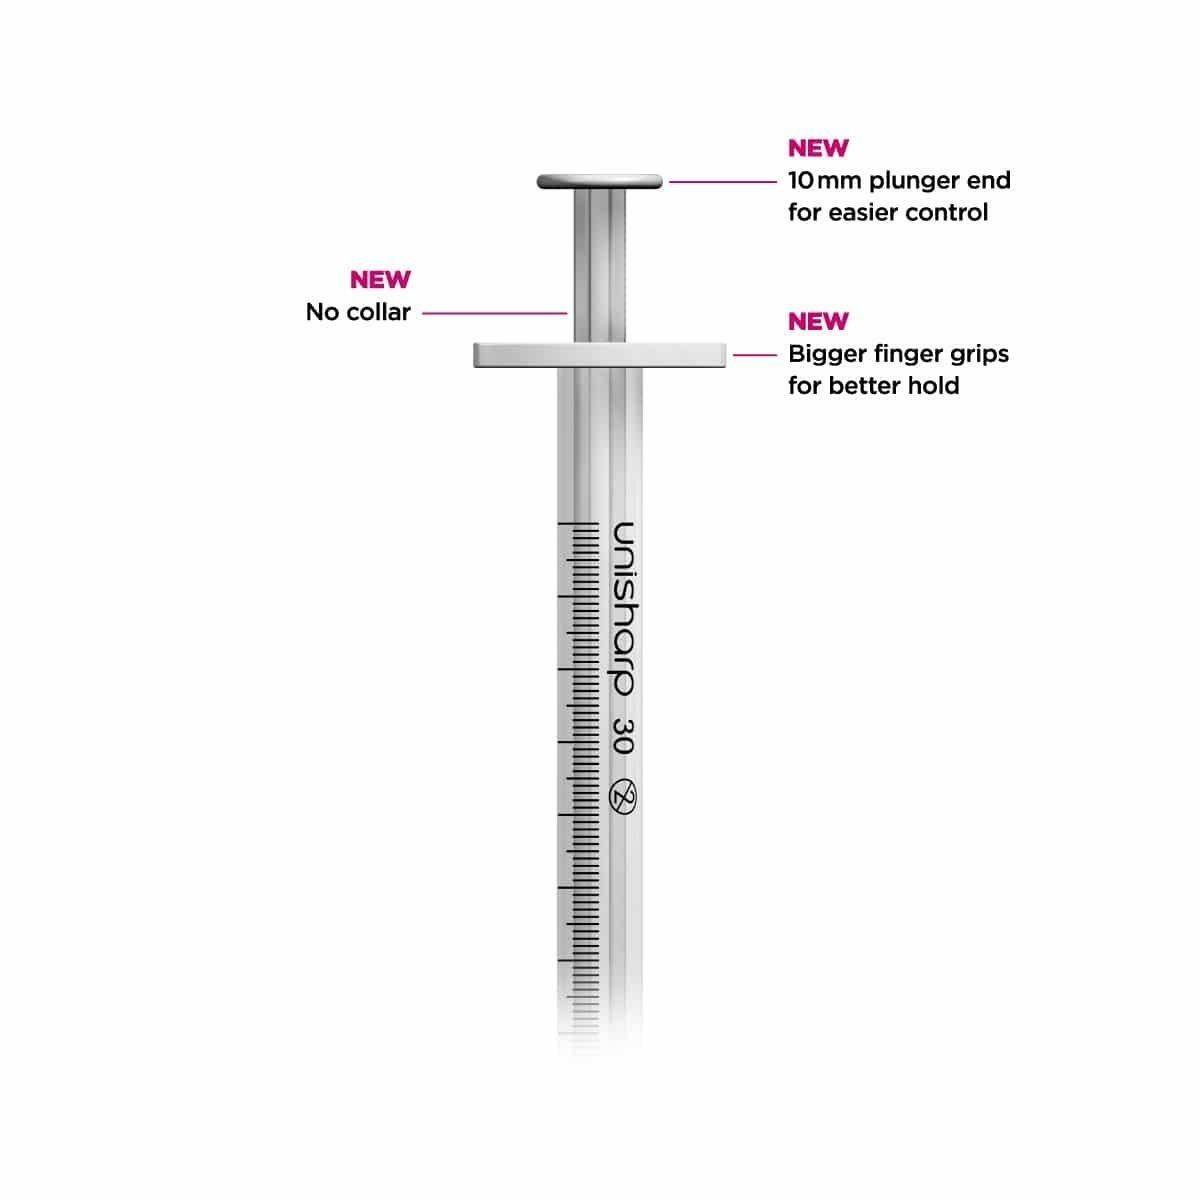 1ml 0.5 inch 30g Unisharp Syringe & Needle u100 - UKMEDI